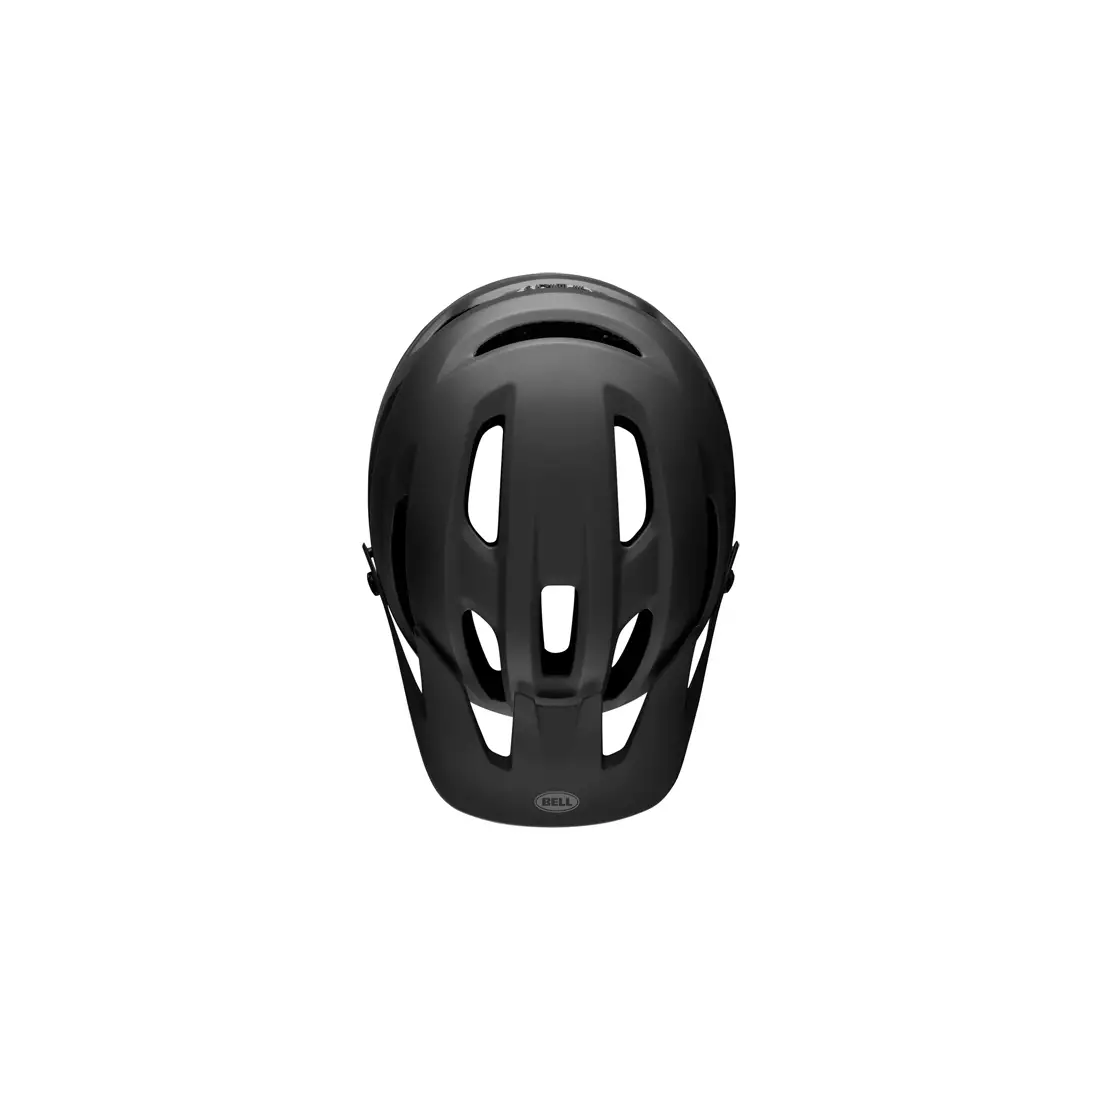 Bike helmet mtb BELL 4FORTY matte gloss black 